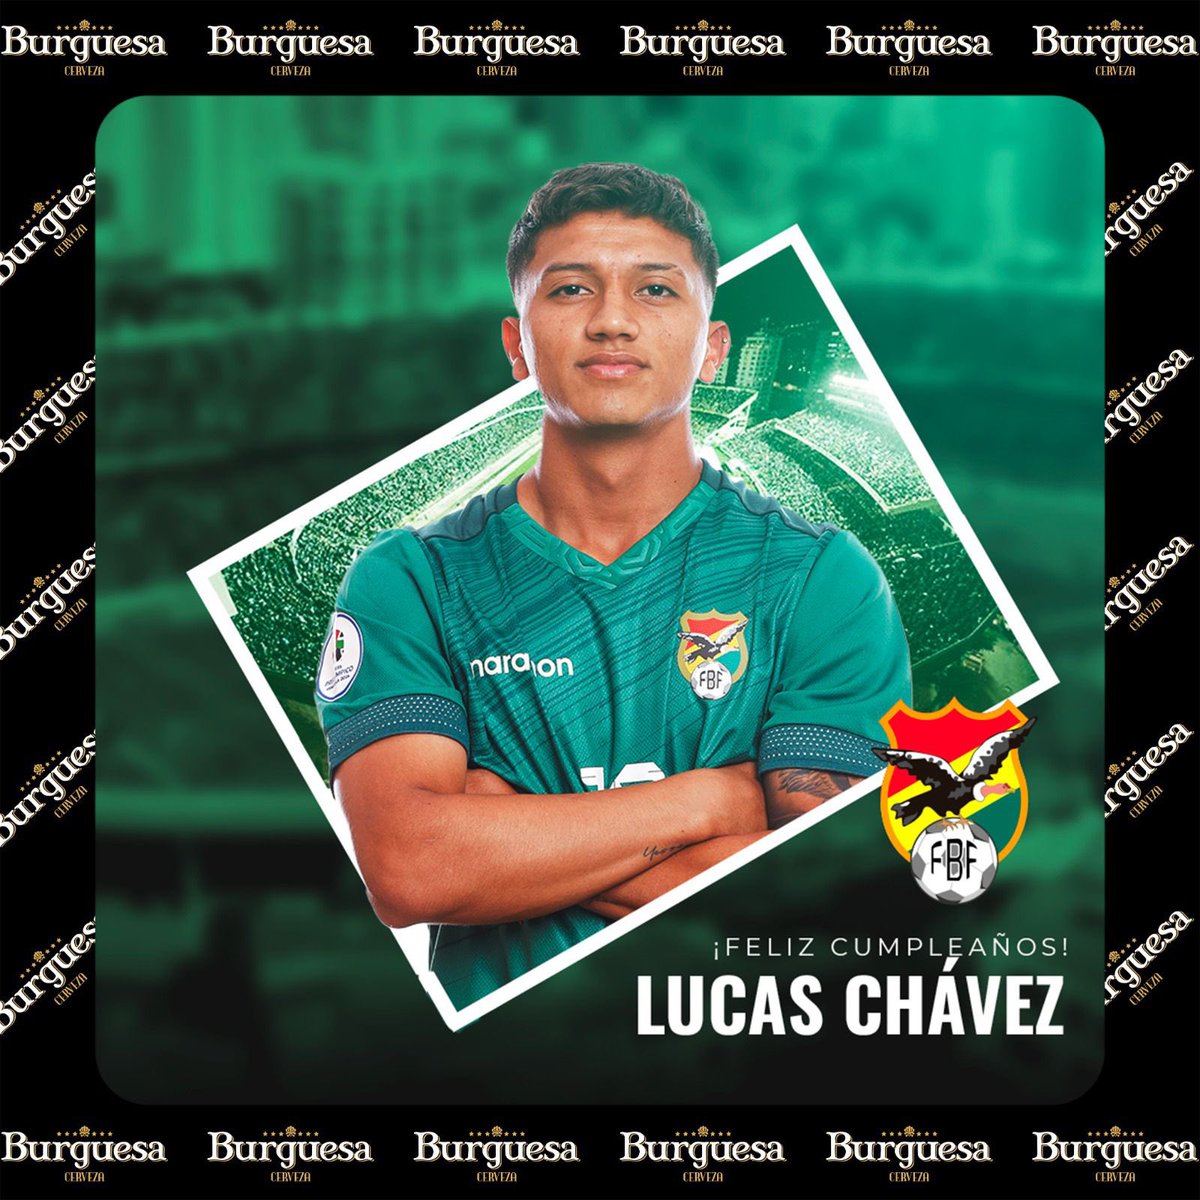 🎉 ¡El día de hoy celebramos el cumpleaños de Lucas Chávez! 🎂 🫂 Felicidades Lucas, esperemos sea un año lleno de alegrías y éxitos dentro y fuera de las canchas. 🏆⚽️ #ALaVerdeSiempre❤️💛💚 #FBFtrabajando